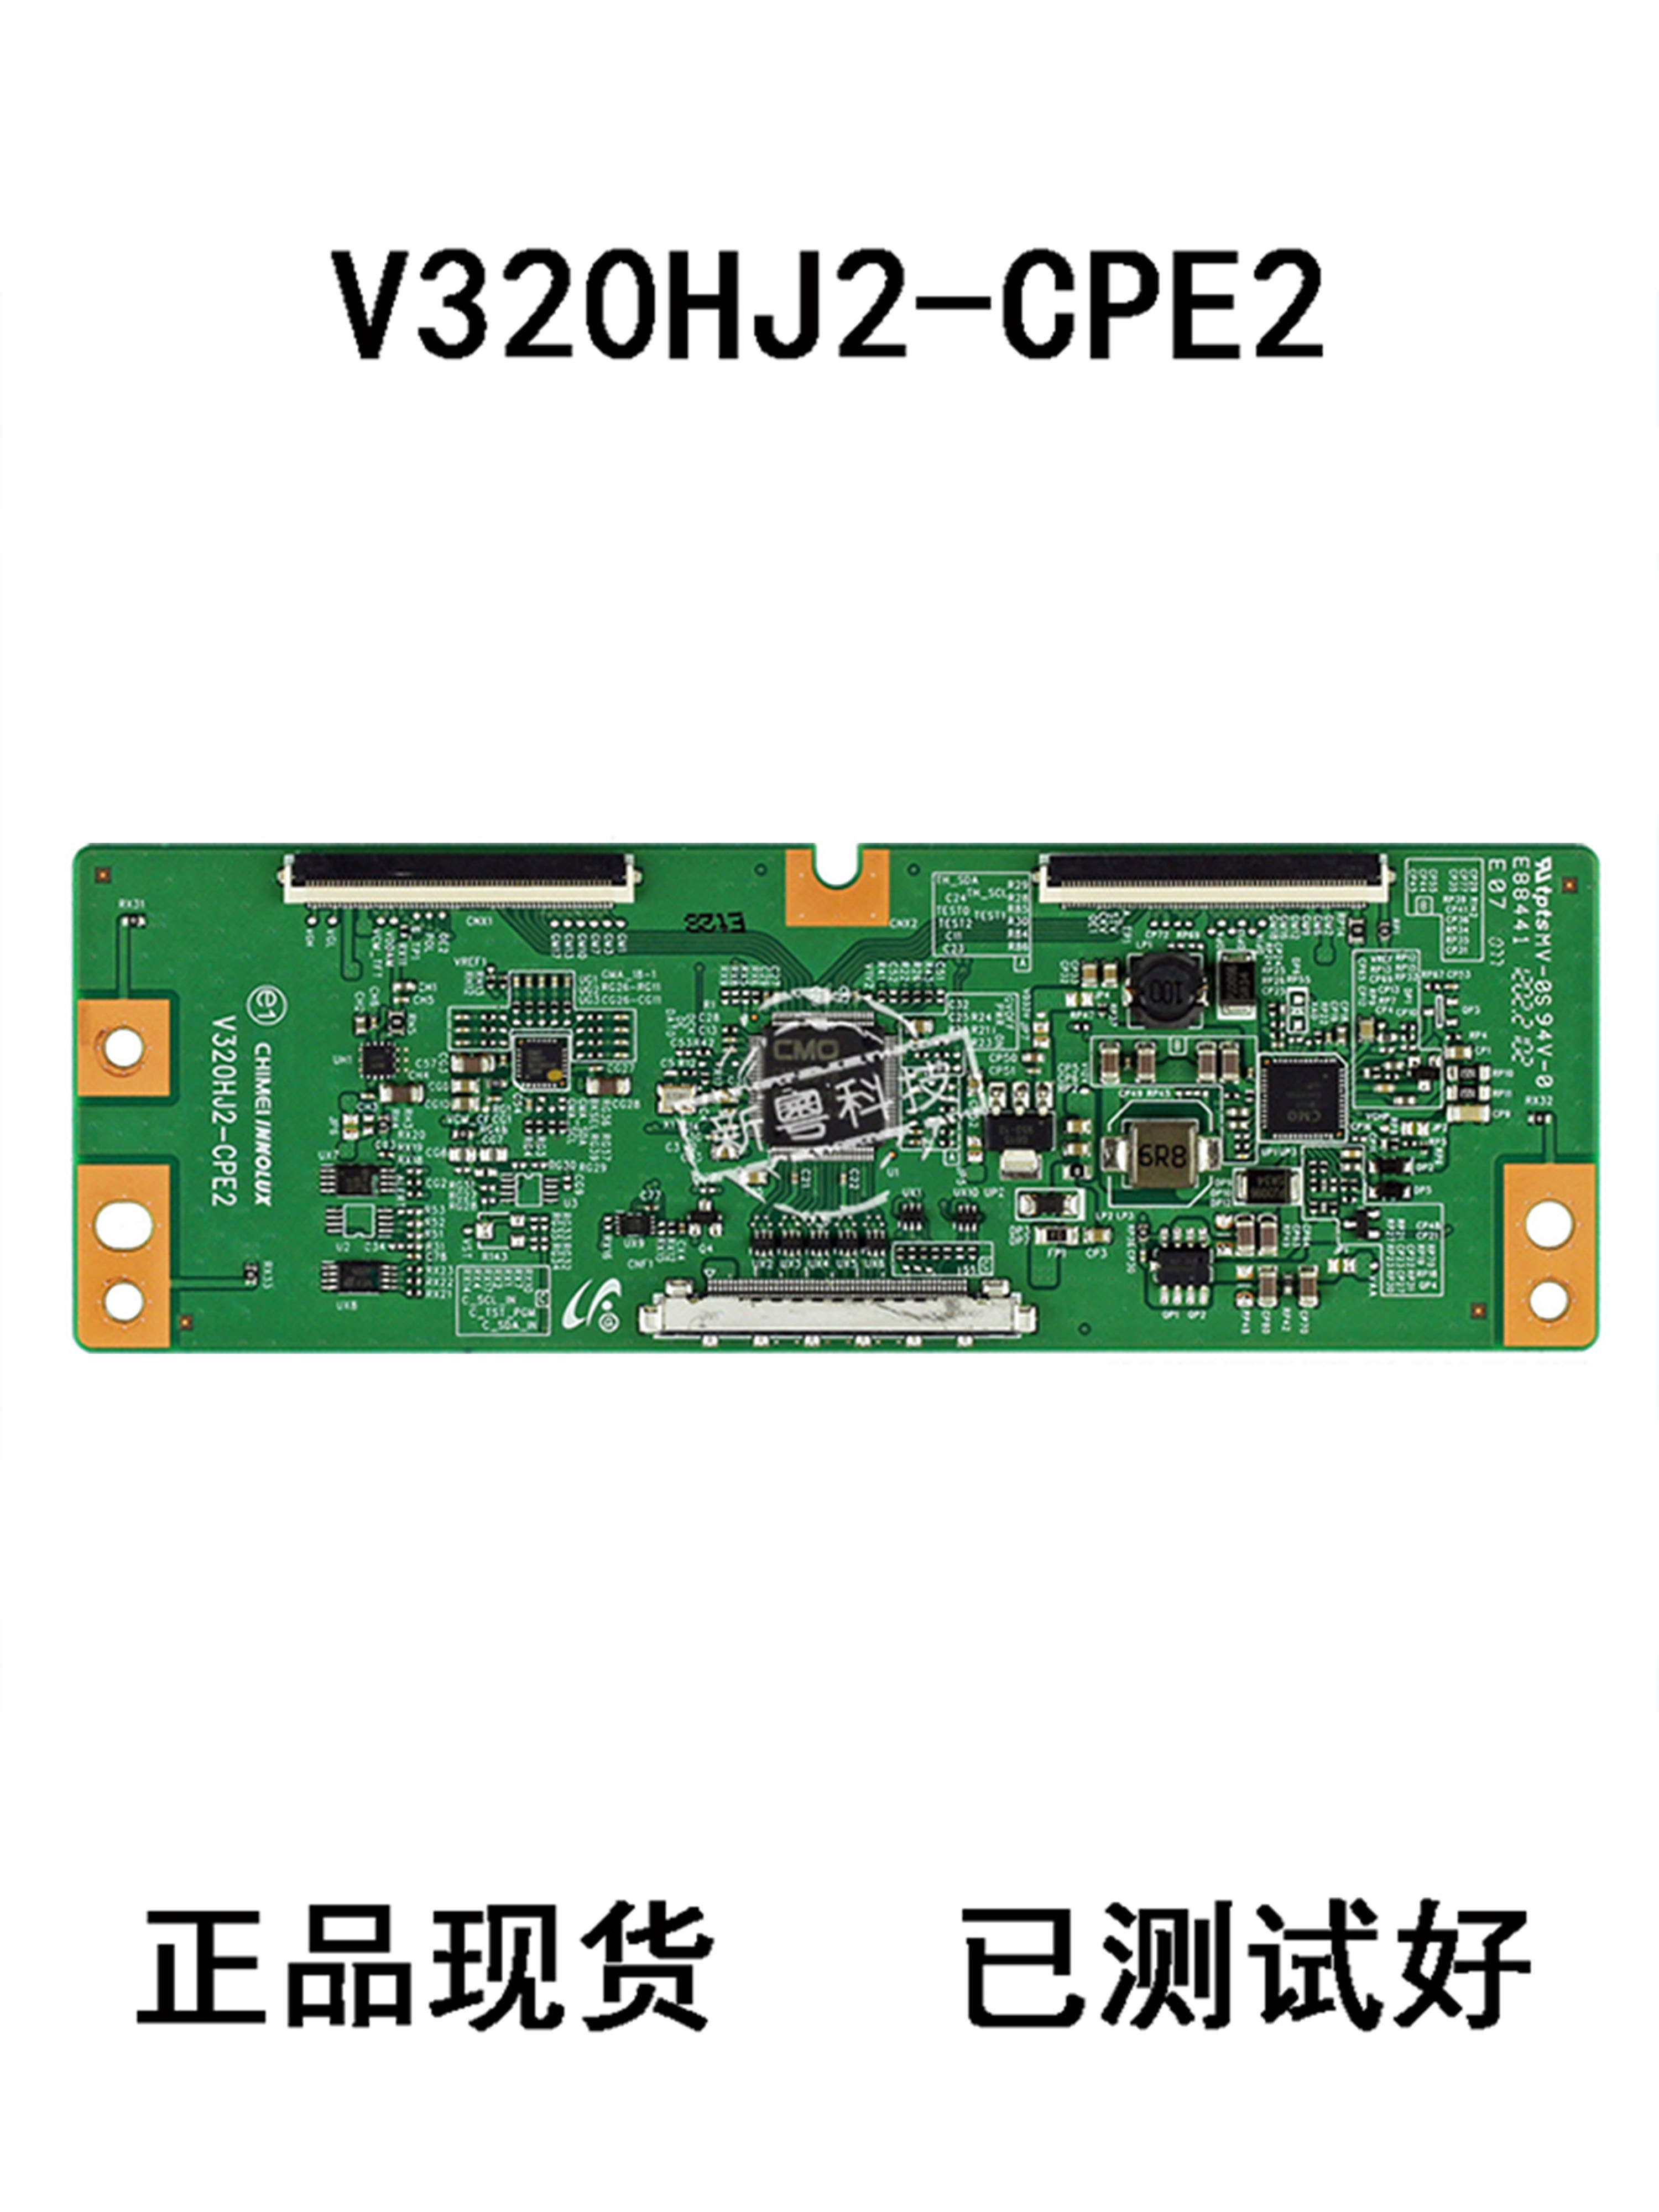 适用奇美V320HJ2-CPE3 V320HJ2-CPE2 晶之媒-CPE3 逻辑板现货 电子元器件市场 显示屏/LCD液晶屏/LED屏/TFT屏 原图主图